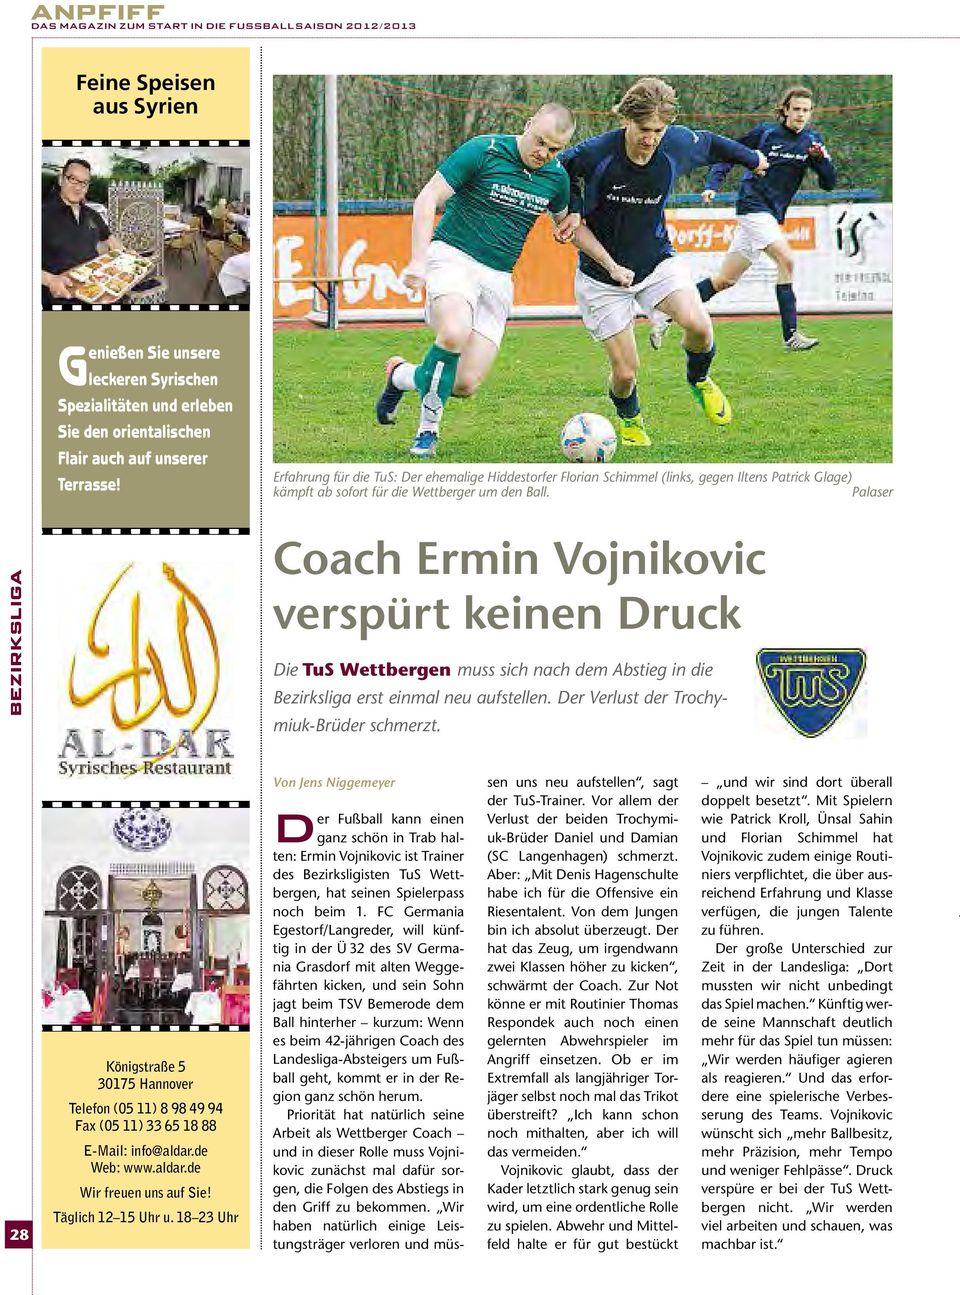 Palaser bezirksliga Coach Ermin Vojnikovic verspürt keinen Druck Die TuS Wettbergen muss sich nach dem Abstieg in die Bezirksliga erst einmal neu aufstellen.